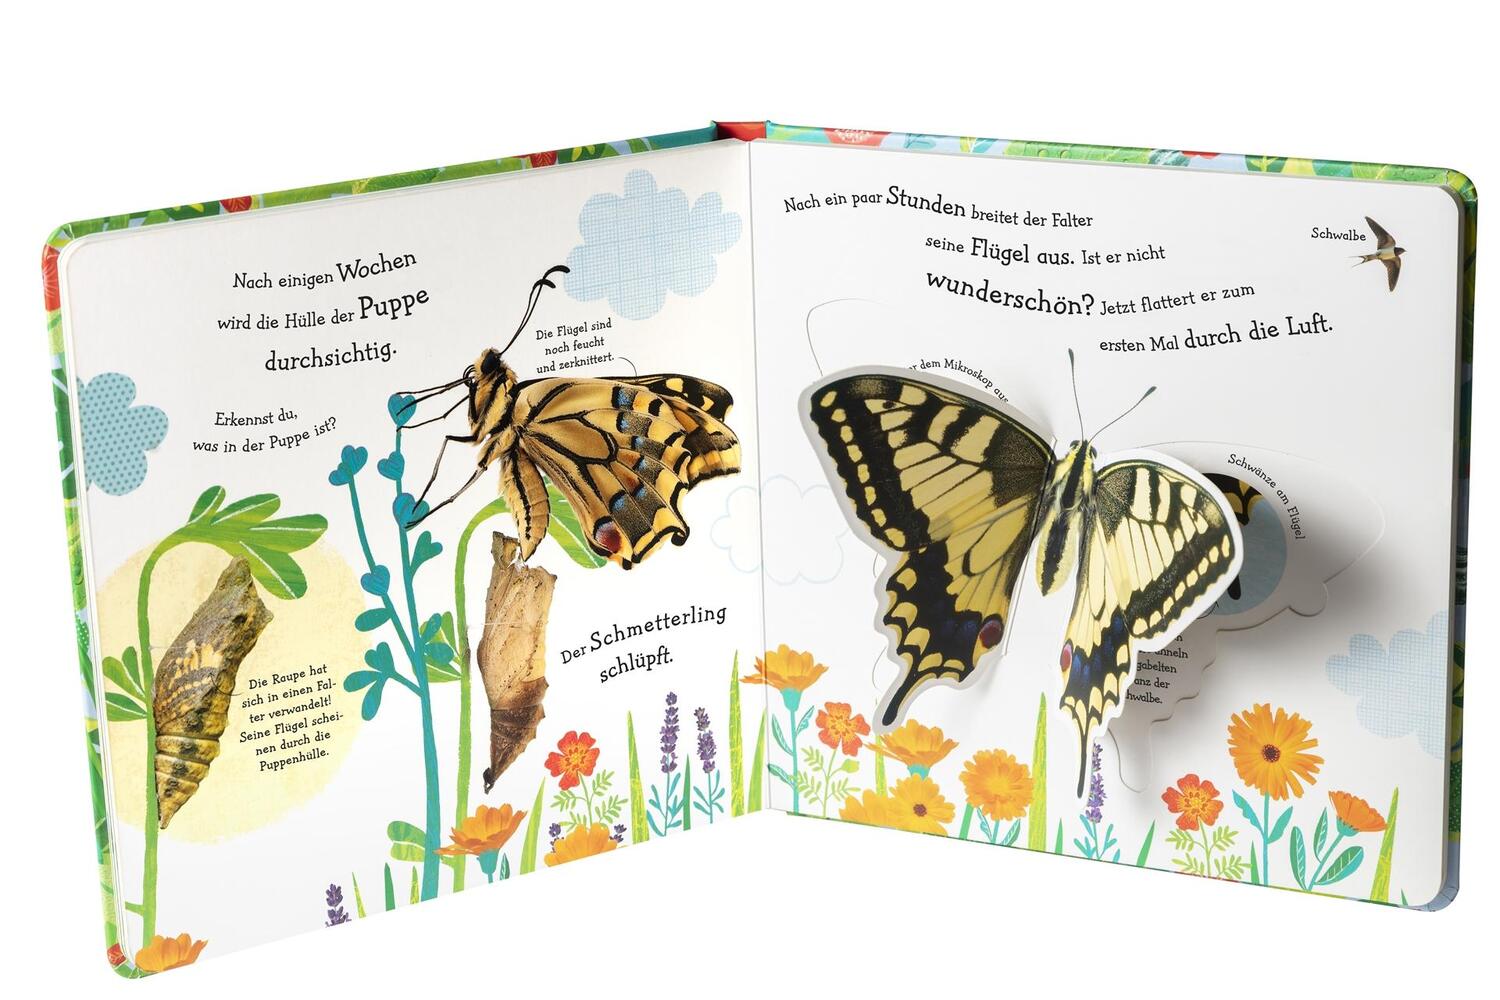 Bild: 9783831036998 | Wie wird die Raupe zum Schmetterling? | Buch | runde Ecken und Klappen